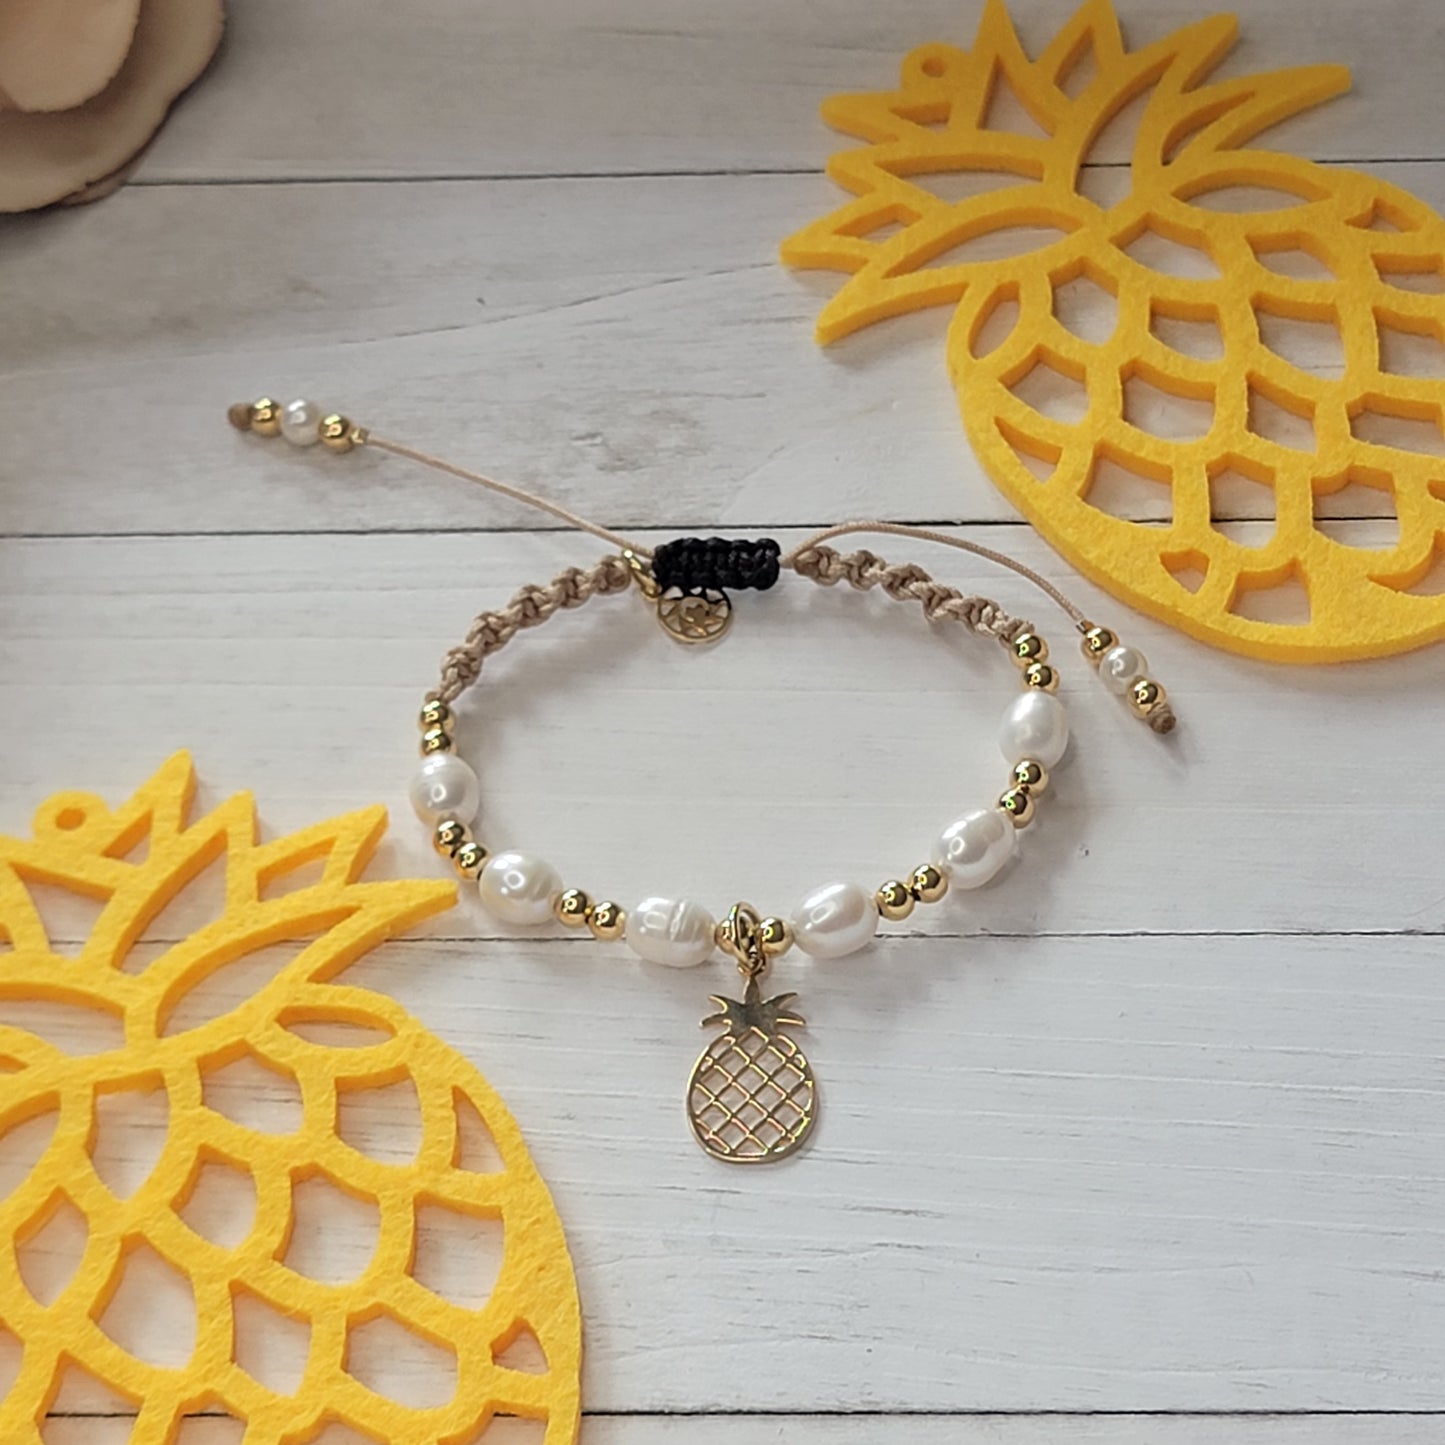 Pineapple Handmade Bracelet. 18k Gold-Filled Pendant. Freshwater Pearls